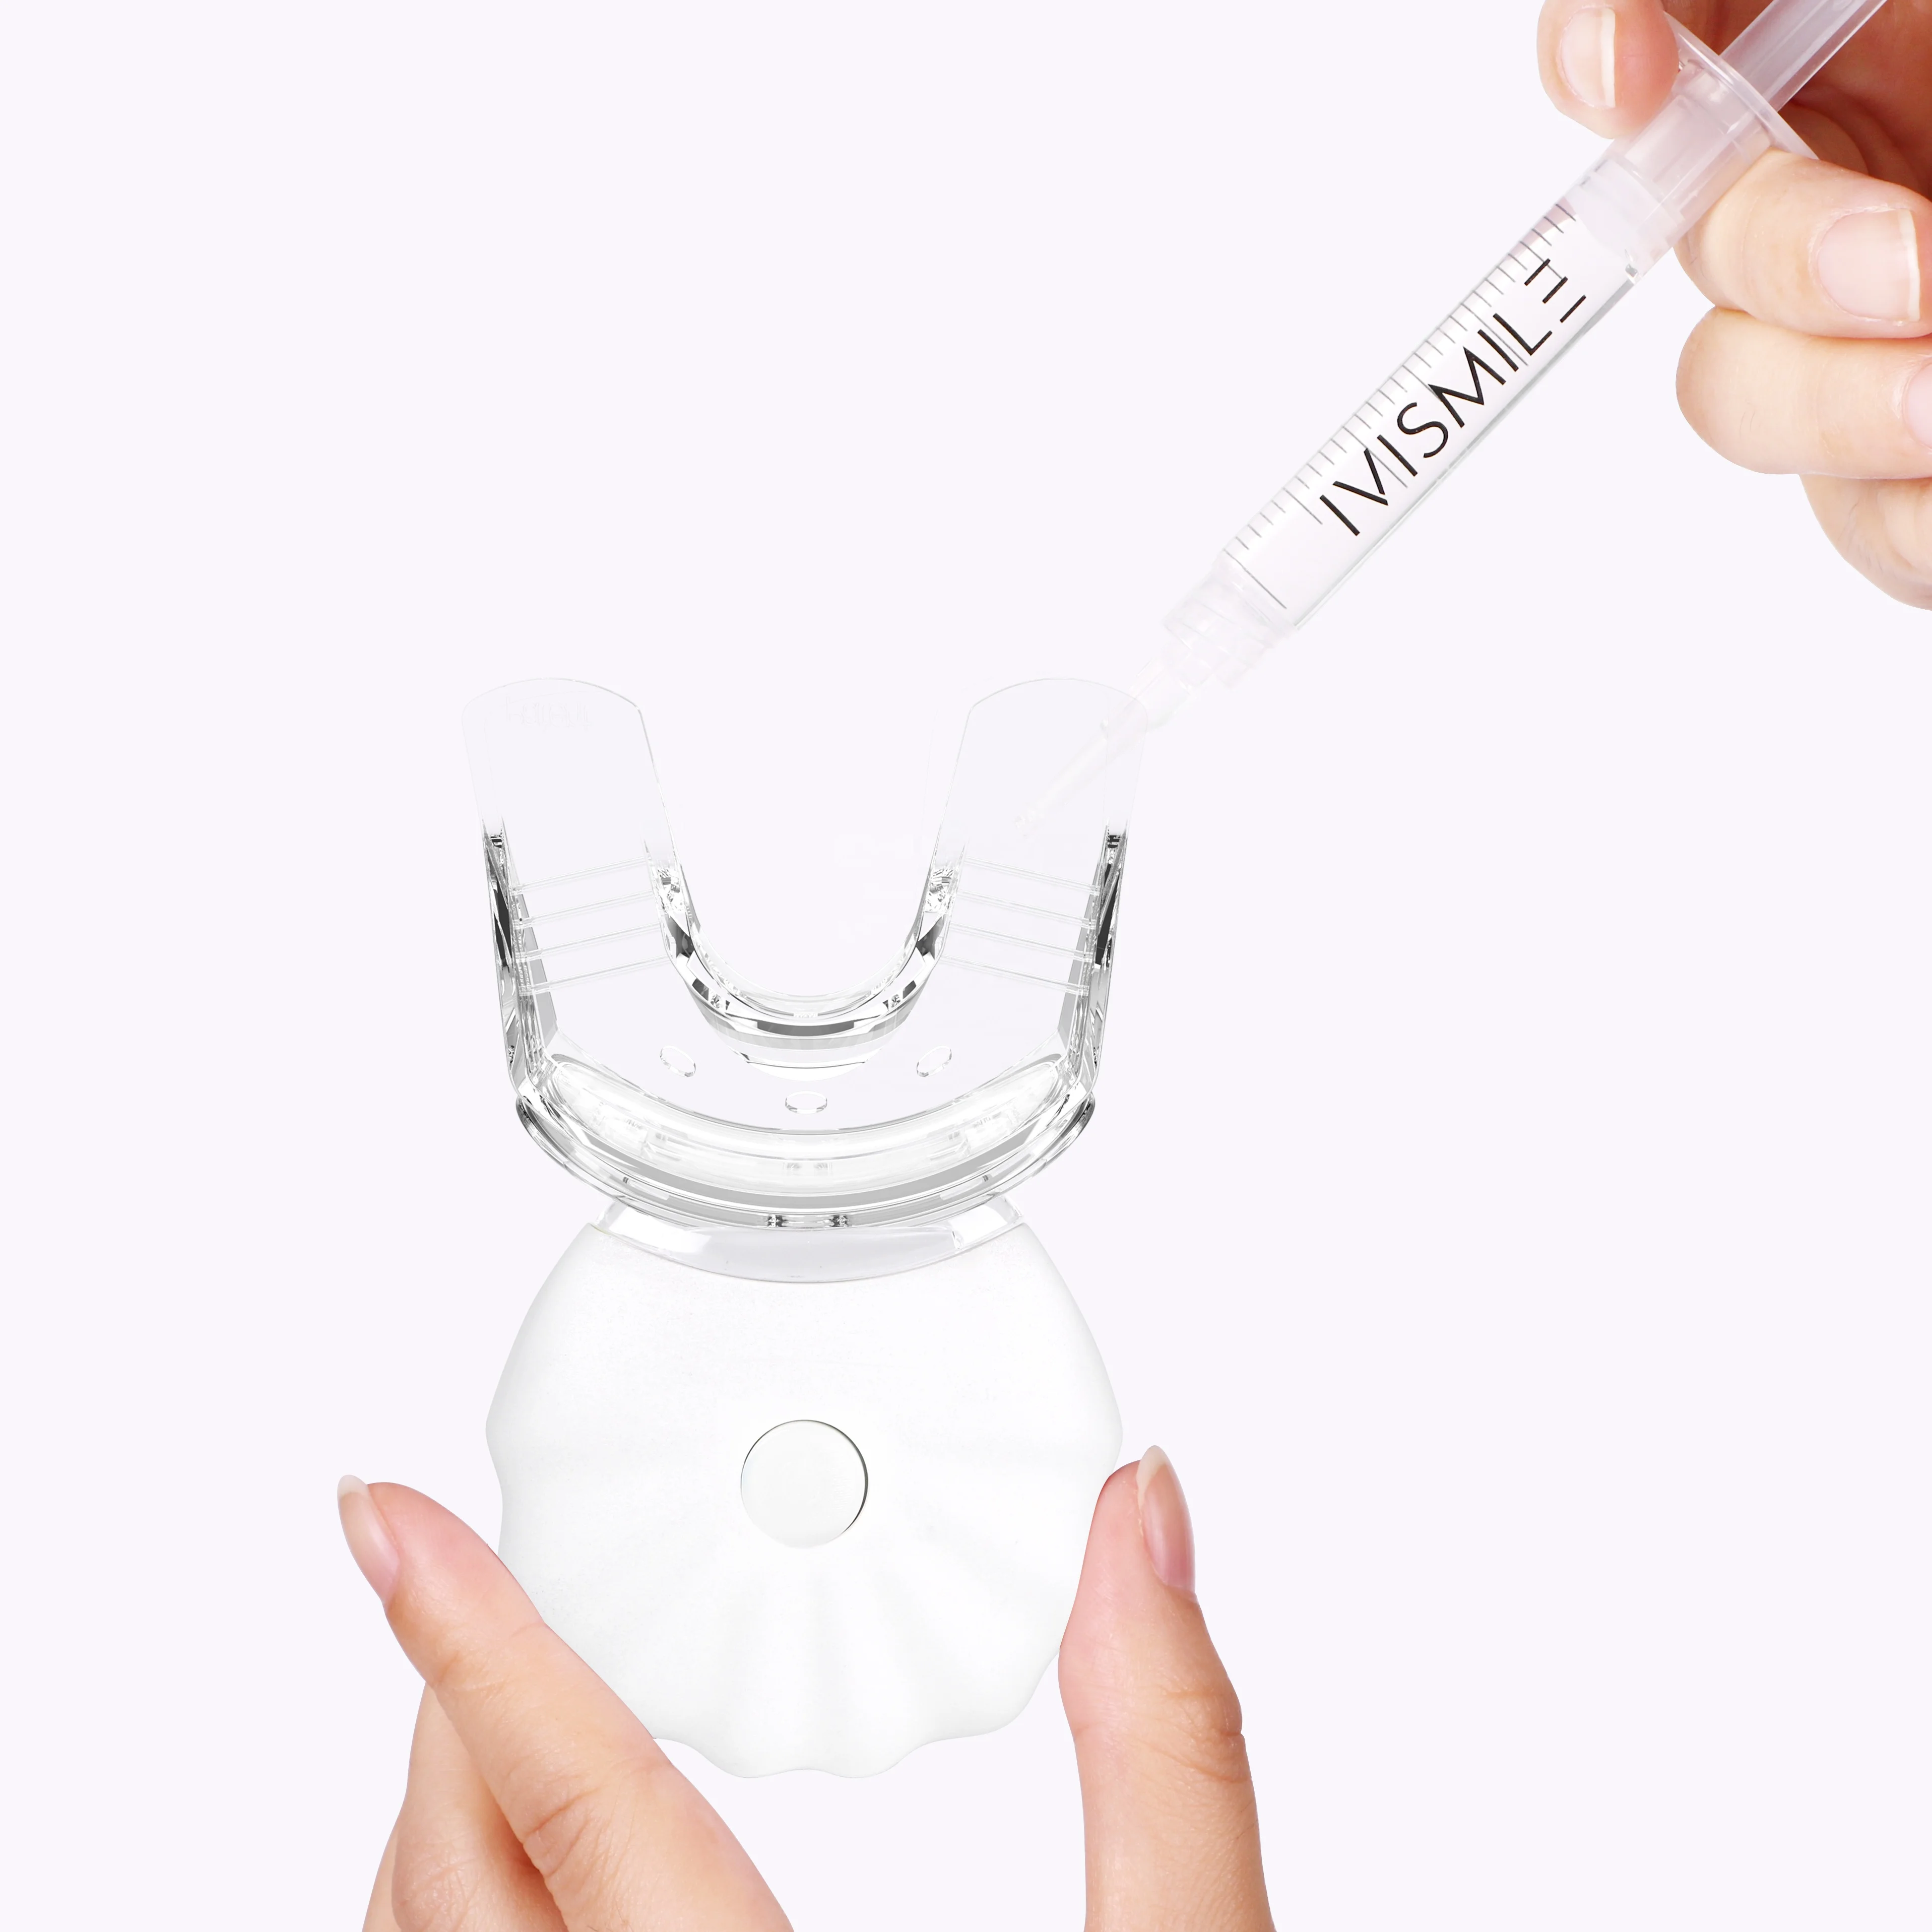 
Набор для белого отбеливания зубов Premium Grade 0,1-44% CP, светодиодный светильник IVISMILE, разработанный Nanchang Smile Dental White 